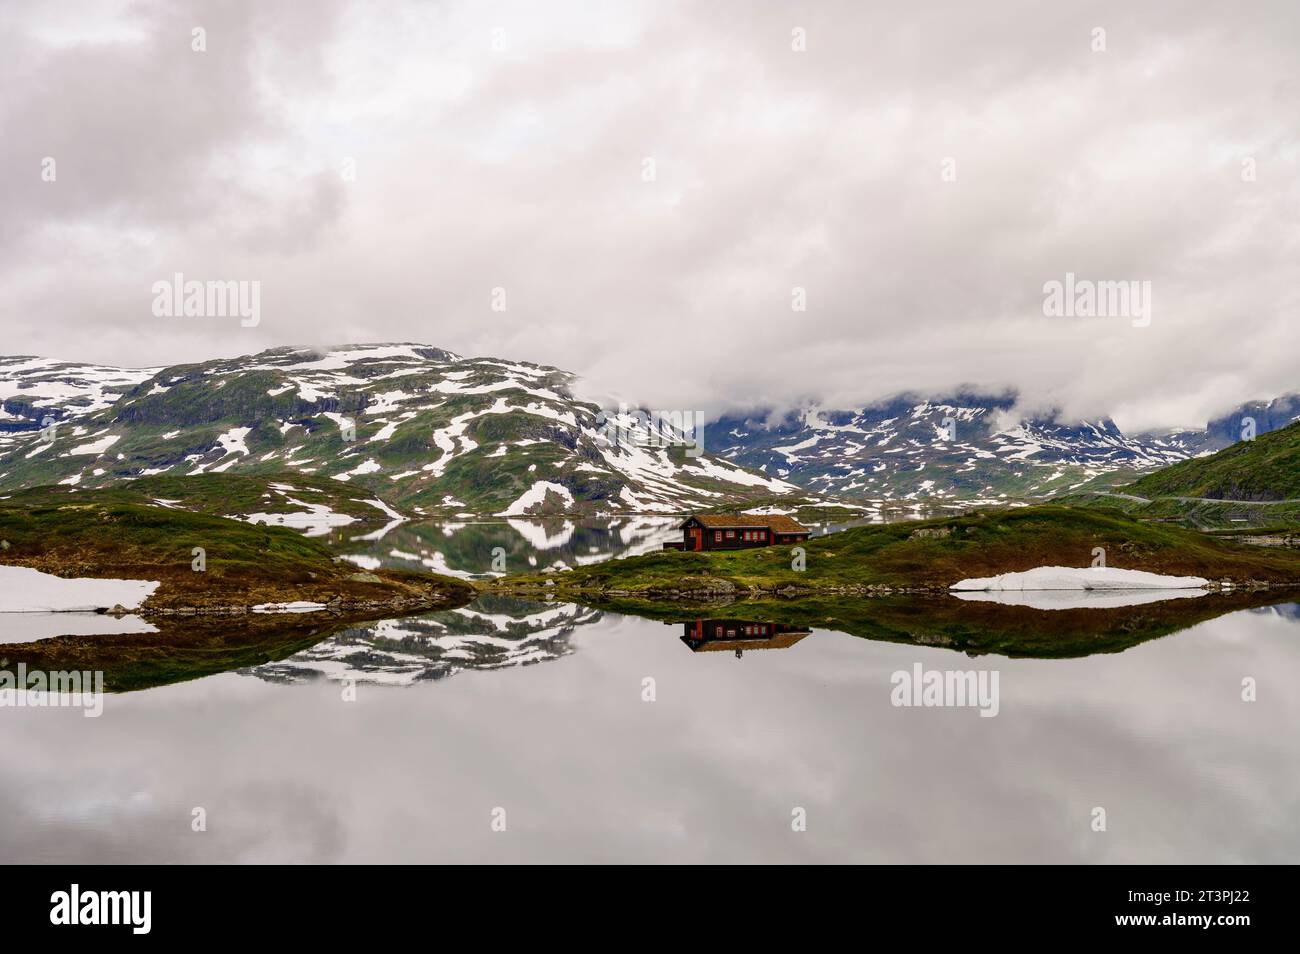 Berge mit Schnee und eine einsame Hütte, die sich in einem ruhigen See auf Haukelifjell in Norwegen spiegelt Stockfoto